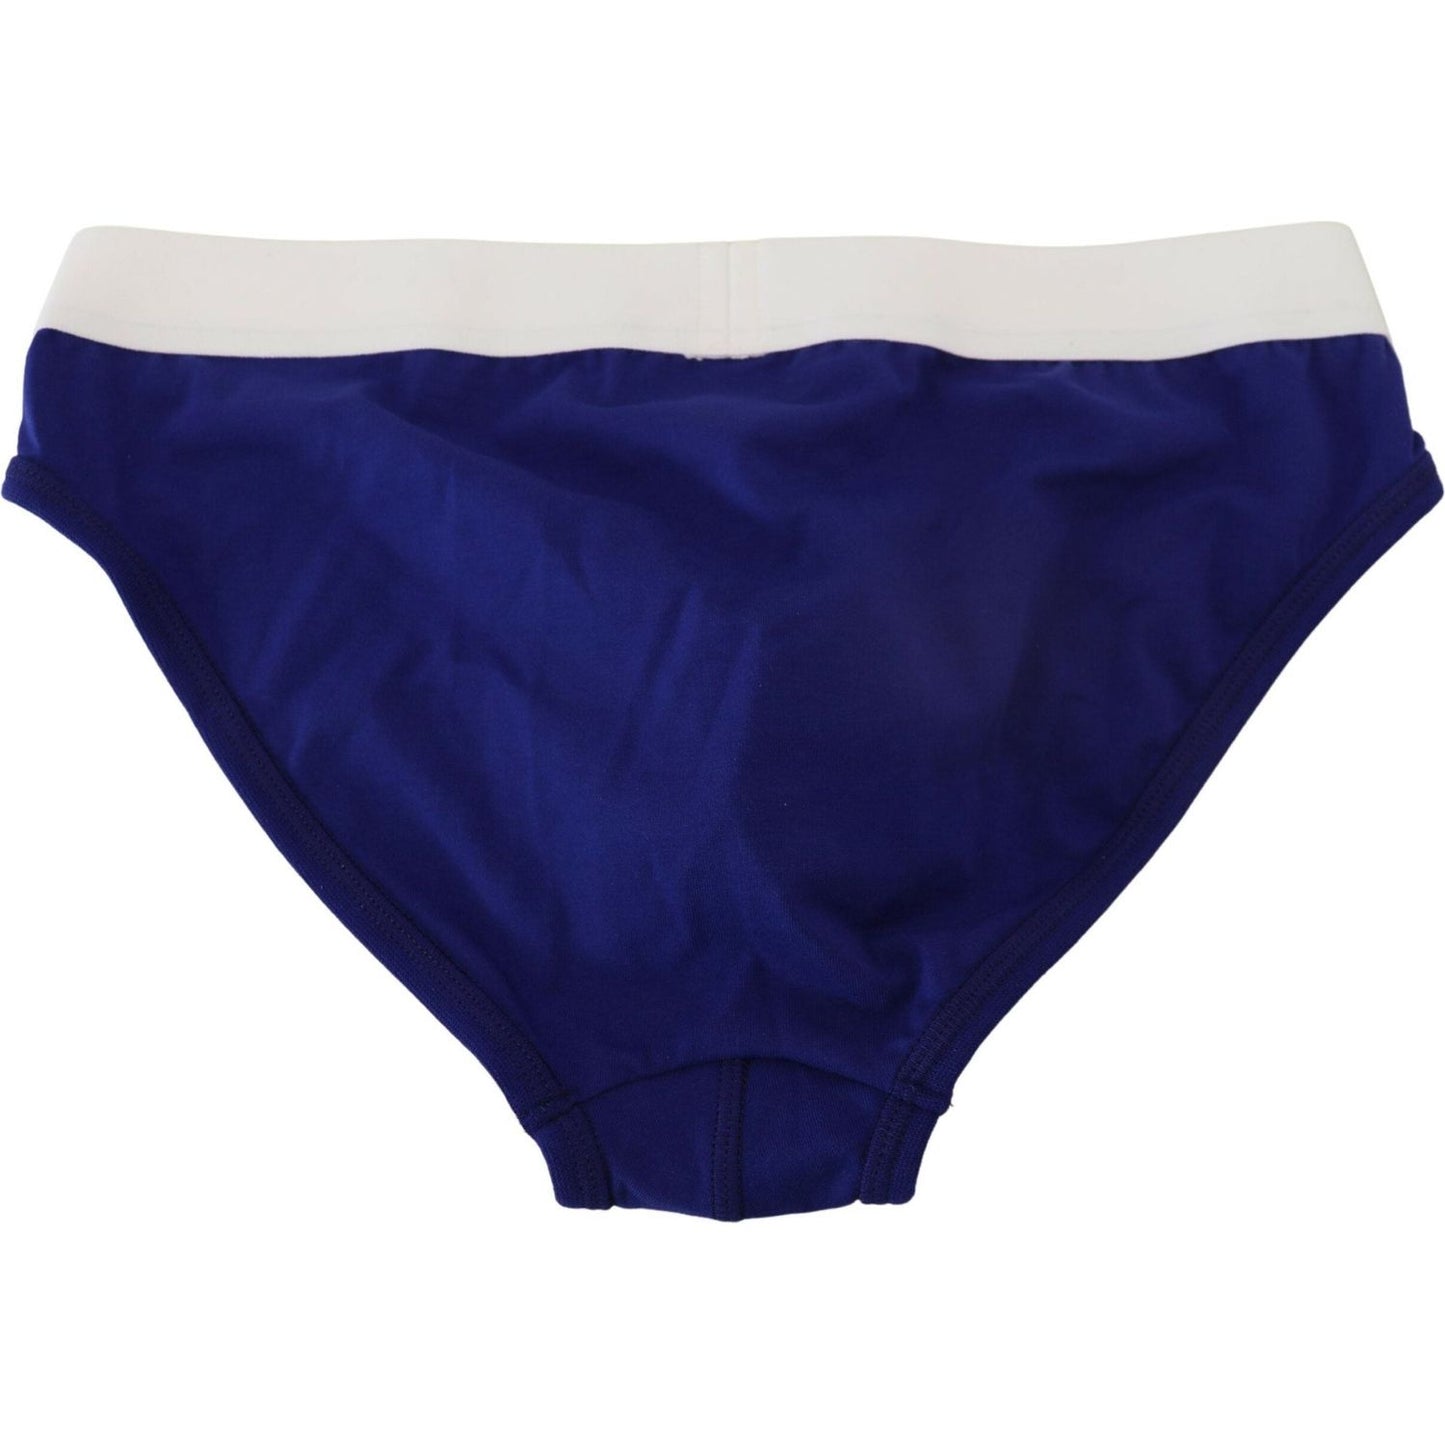 Dsquared² Chic Blue & White Cotton Blend Briefs blue-white-logo-cotton-stretch-men-brief-underwear